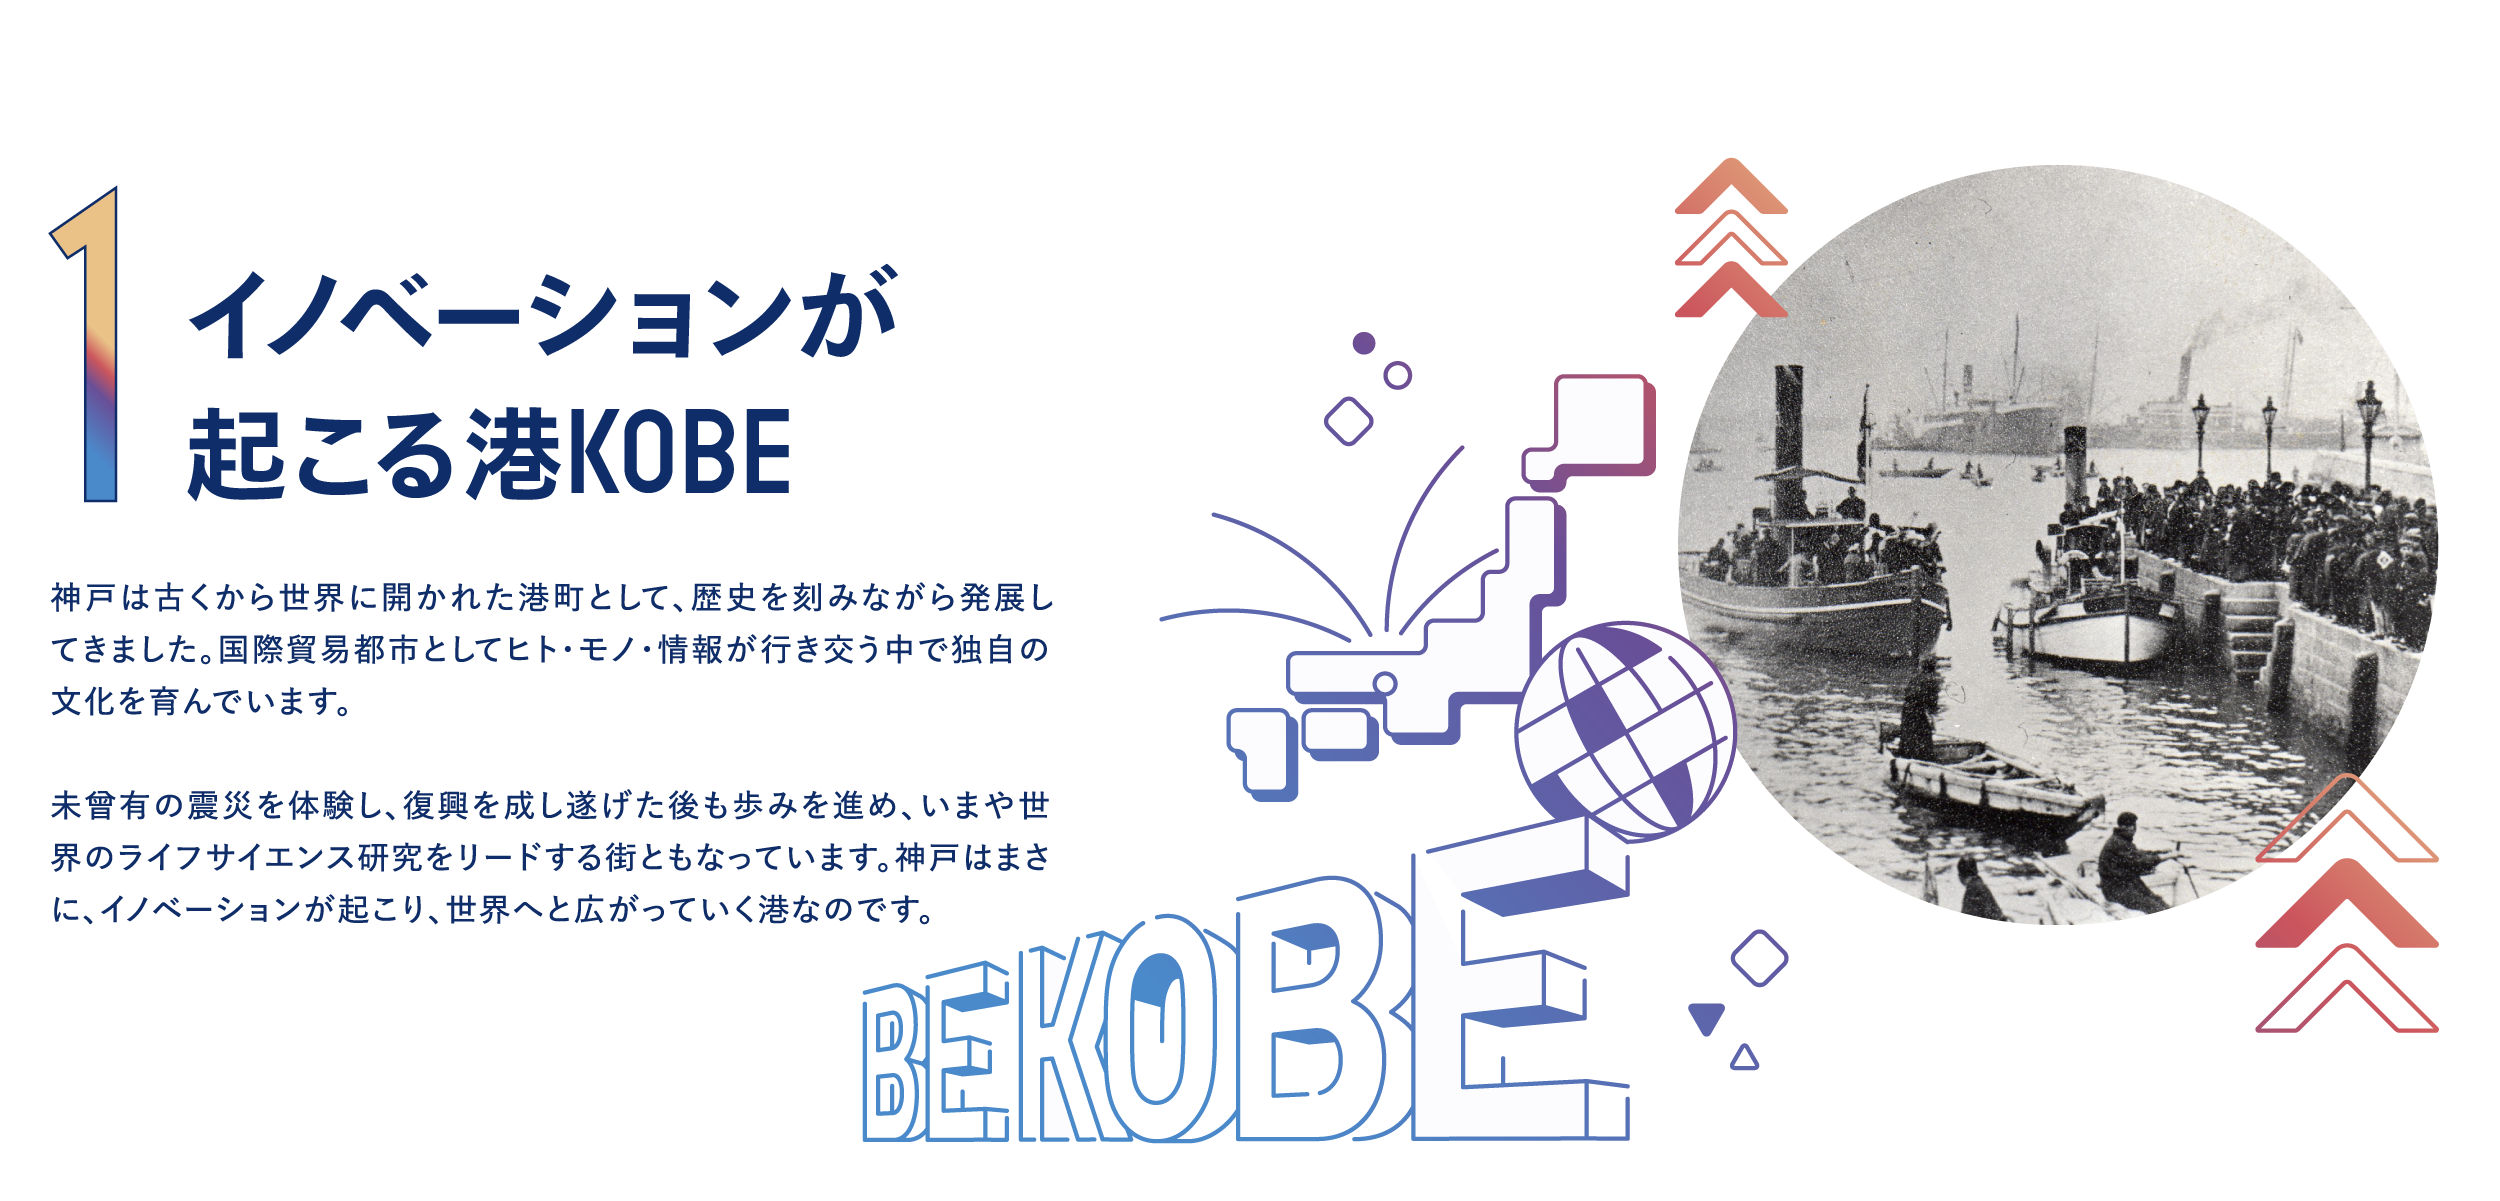 【イノベーションが起こる港KOBE】神戸は古くから世界に開かれた港町として、歴史を刻みながら発展してきました。国際貿易都市としてヒト・モノ・情報が行き交う中で独自の文化を育んでいます。未曾有の震災を体験し、復興を成し遂げた後も歩みを進め、いまや世界のライフサイエンス研究をリードする街ともなっています。神戸はまさに、イノベーションが起こり、世界へと広がっていく港なのです。